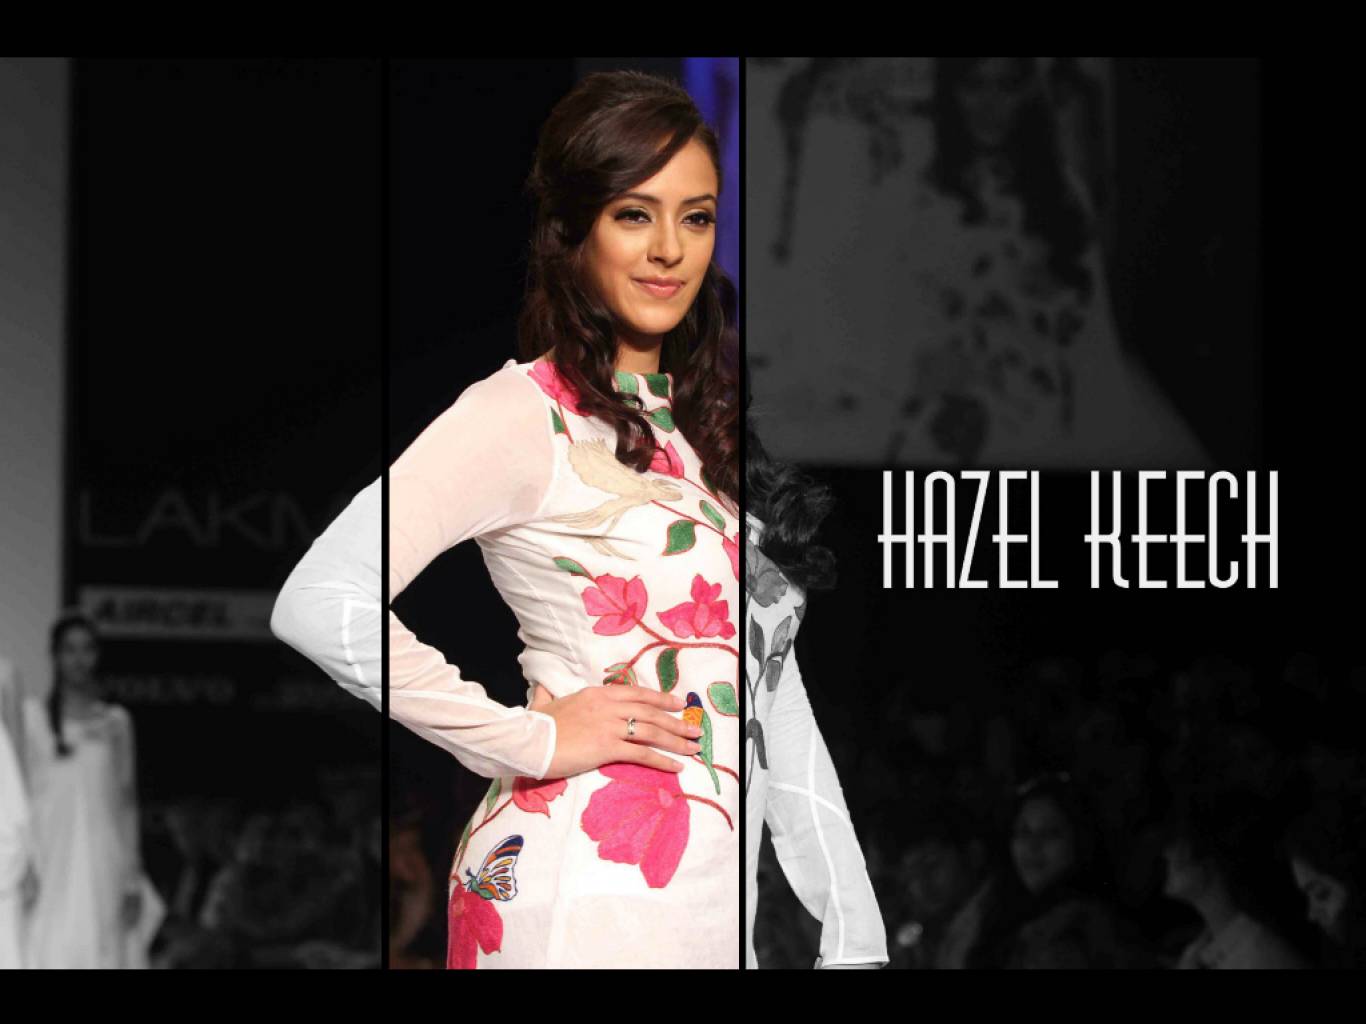 Hazel Keech HD Wallpaper. Latest Hazel Keech Wallpaper HD Free Download (1080p to 2K)